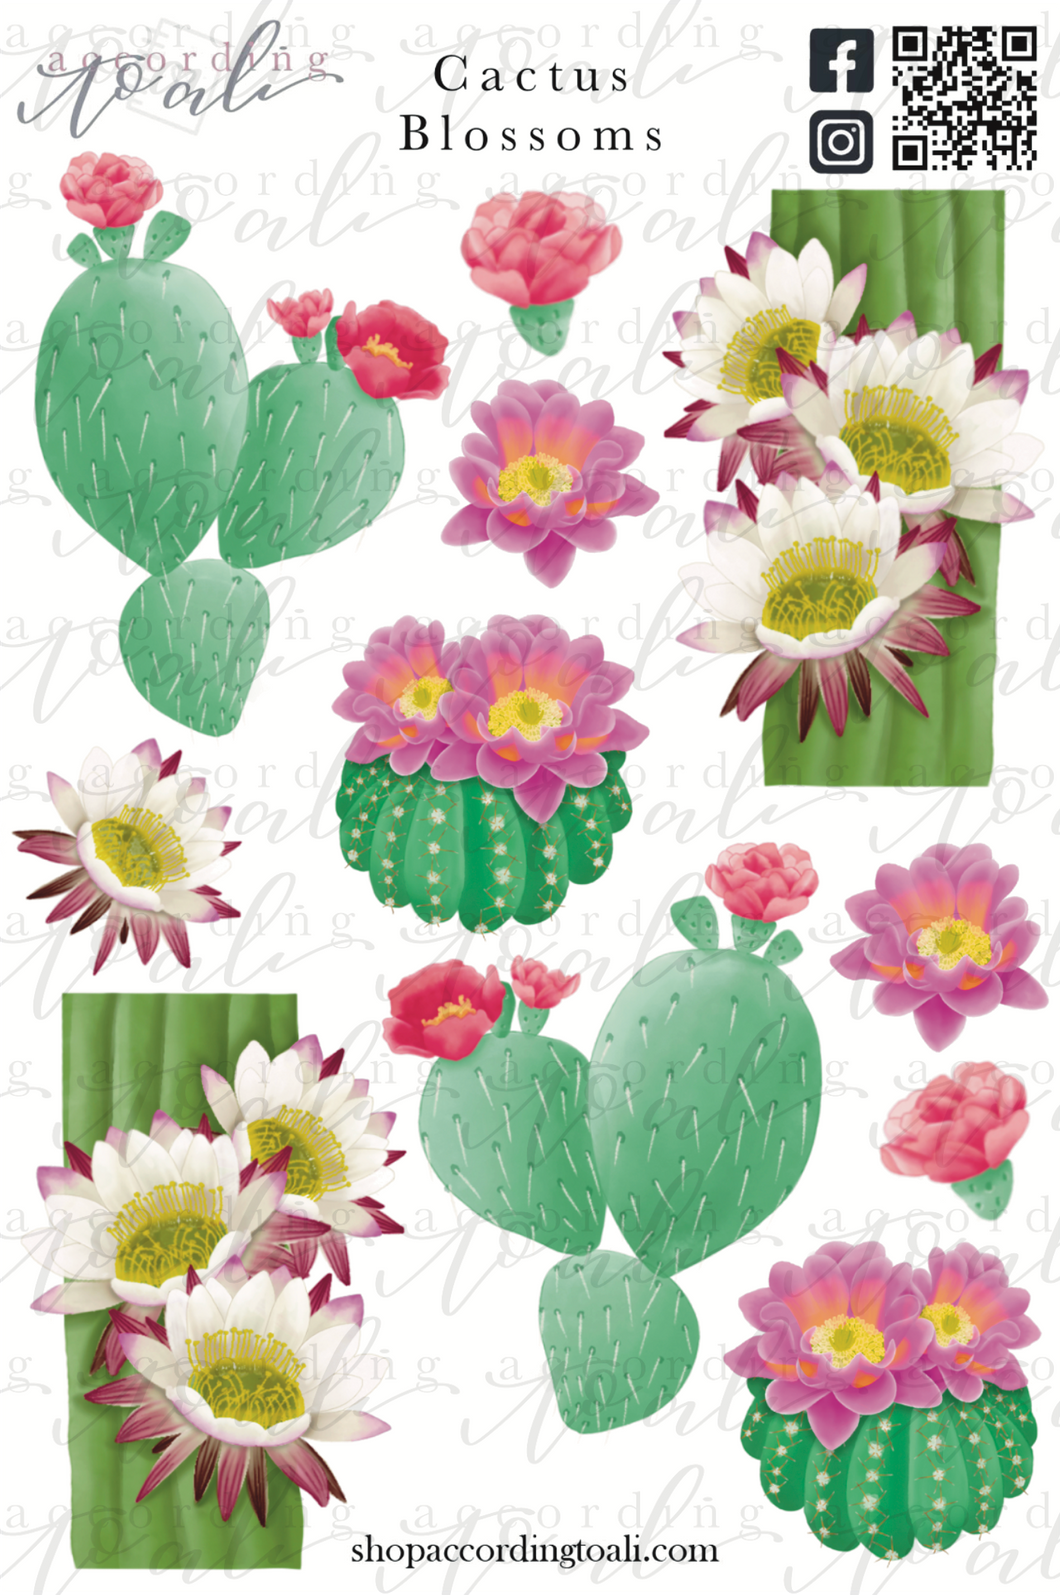 Cactus Blossoms Sticker Sheet